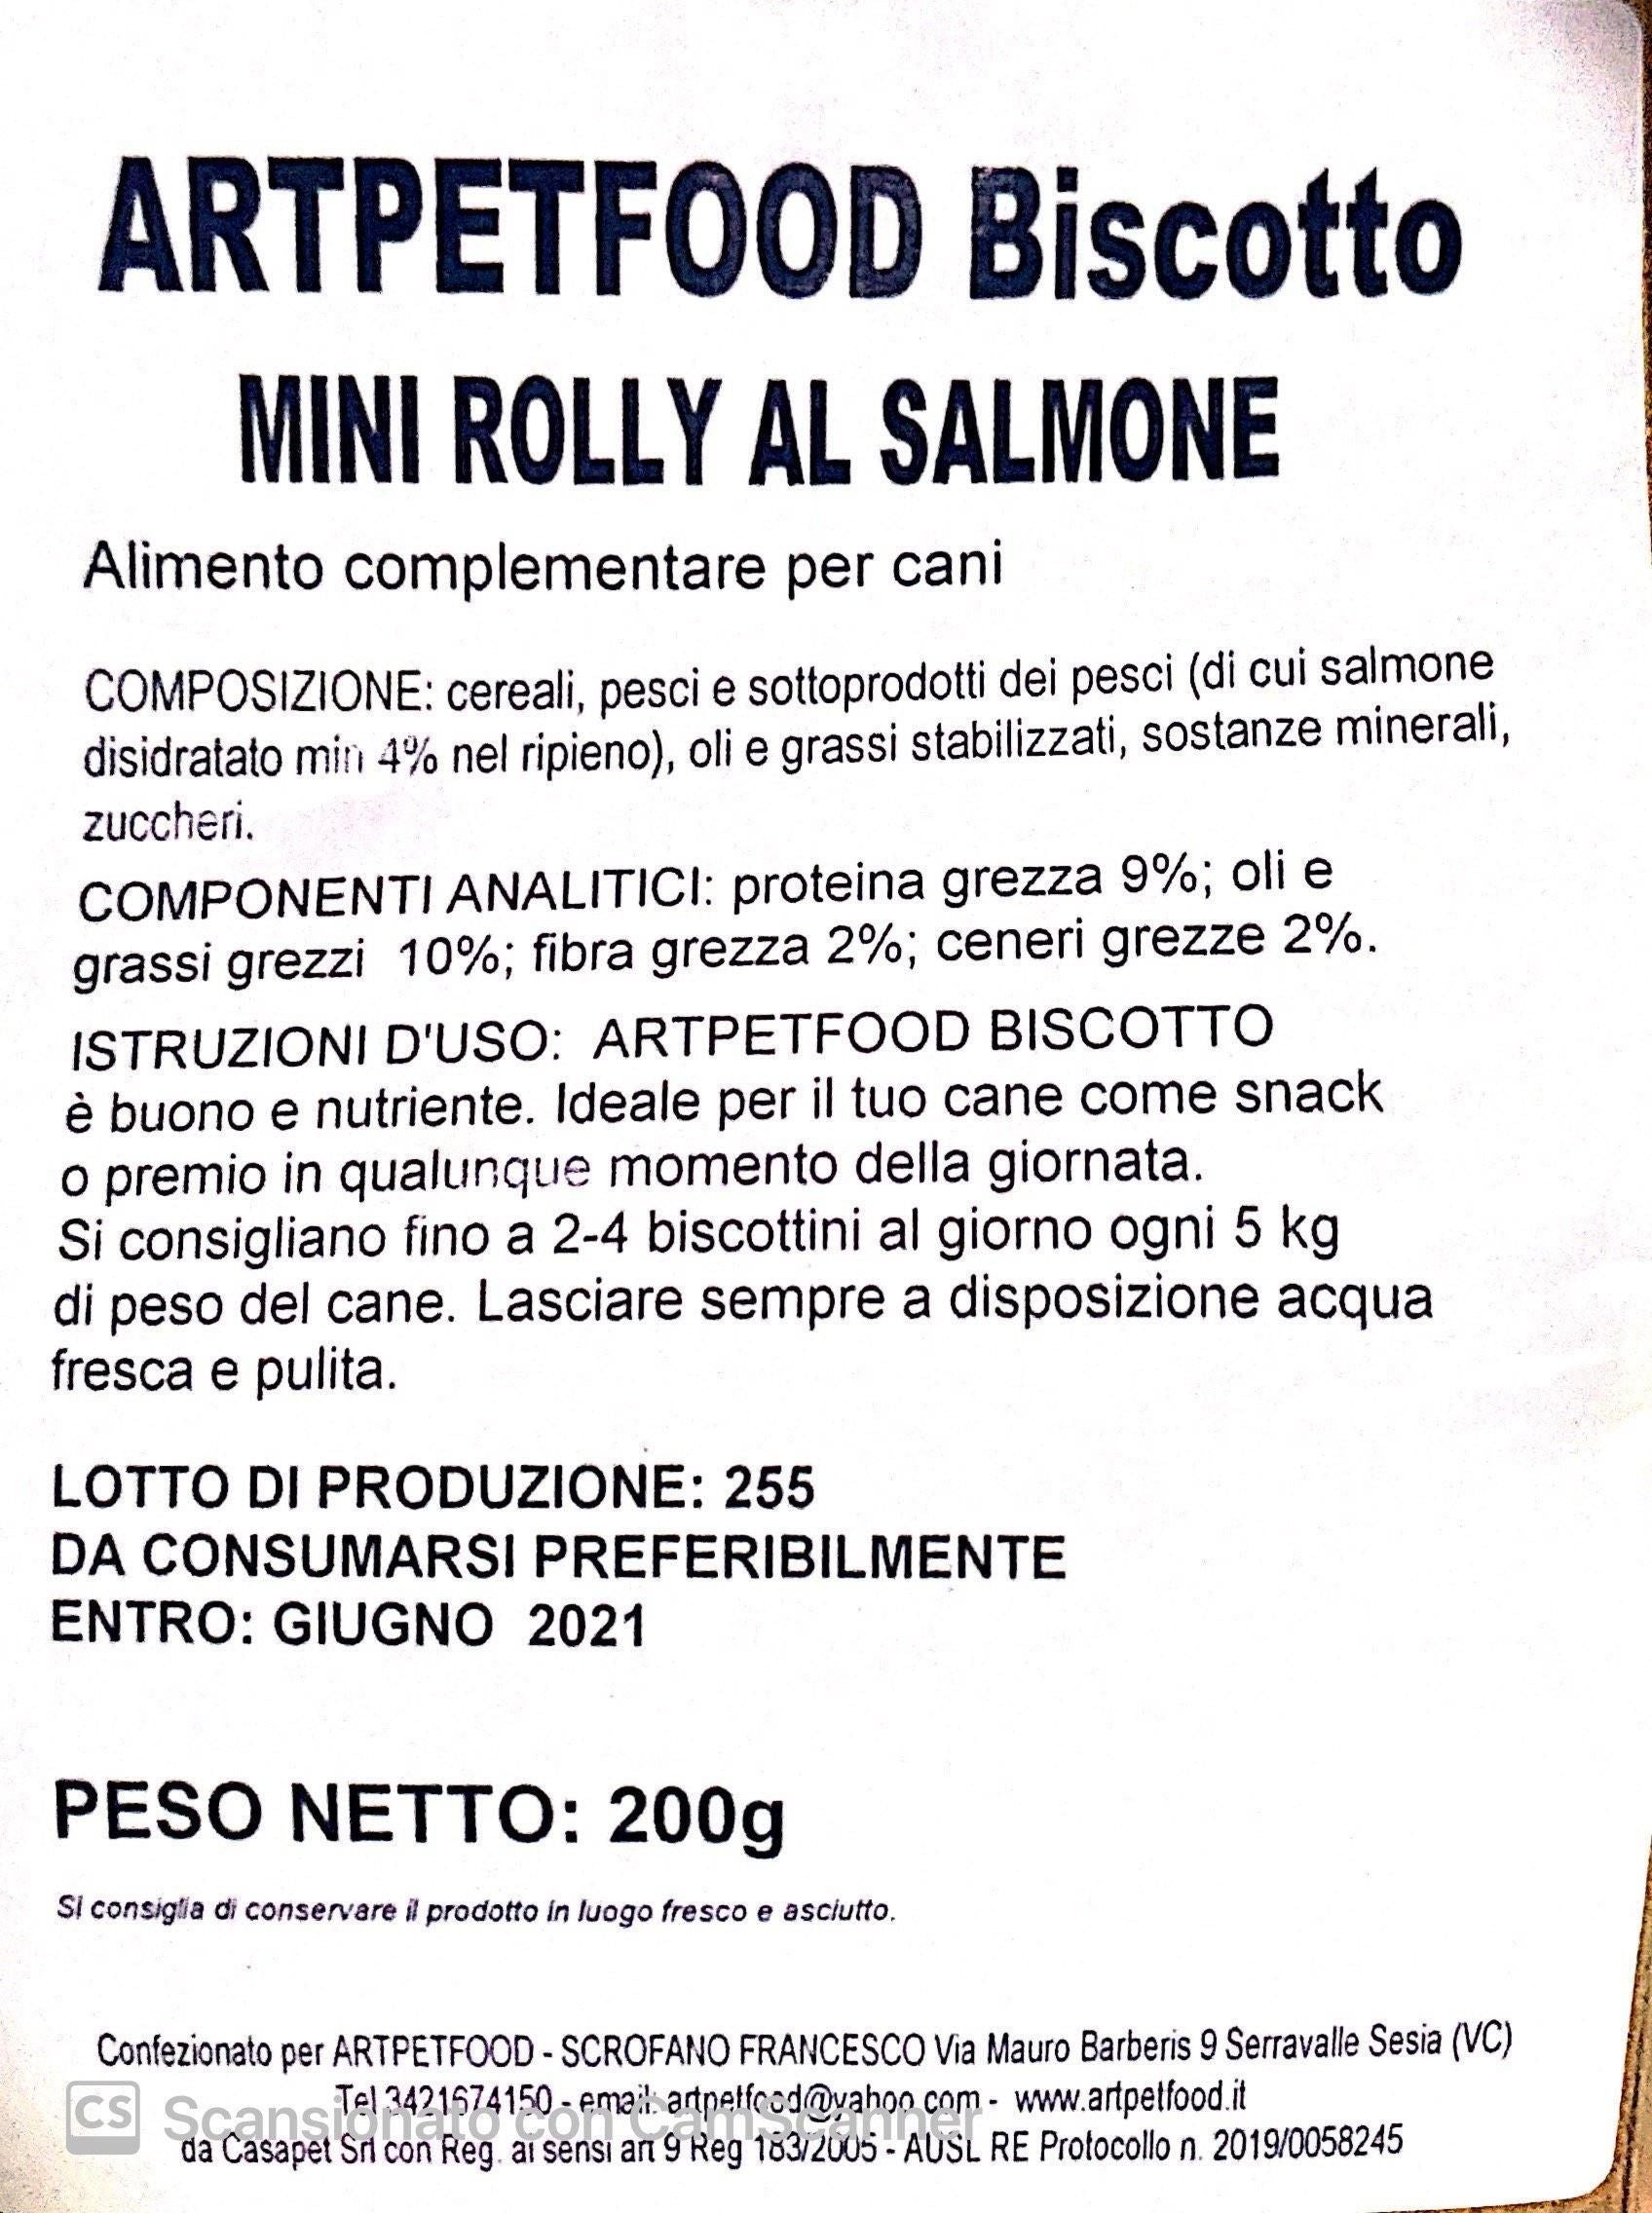 Biscotti Artigianali Per Cani Mini rolly al Salmone - artpetfood